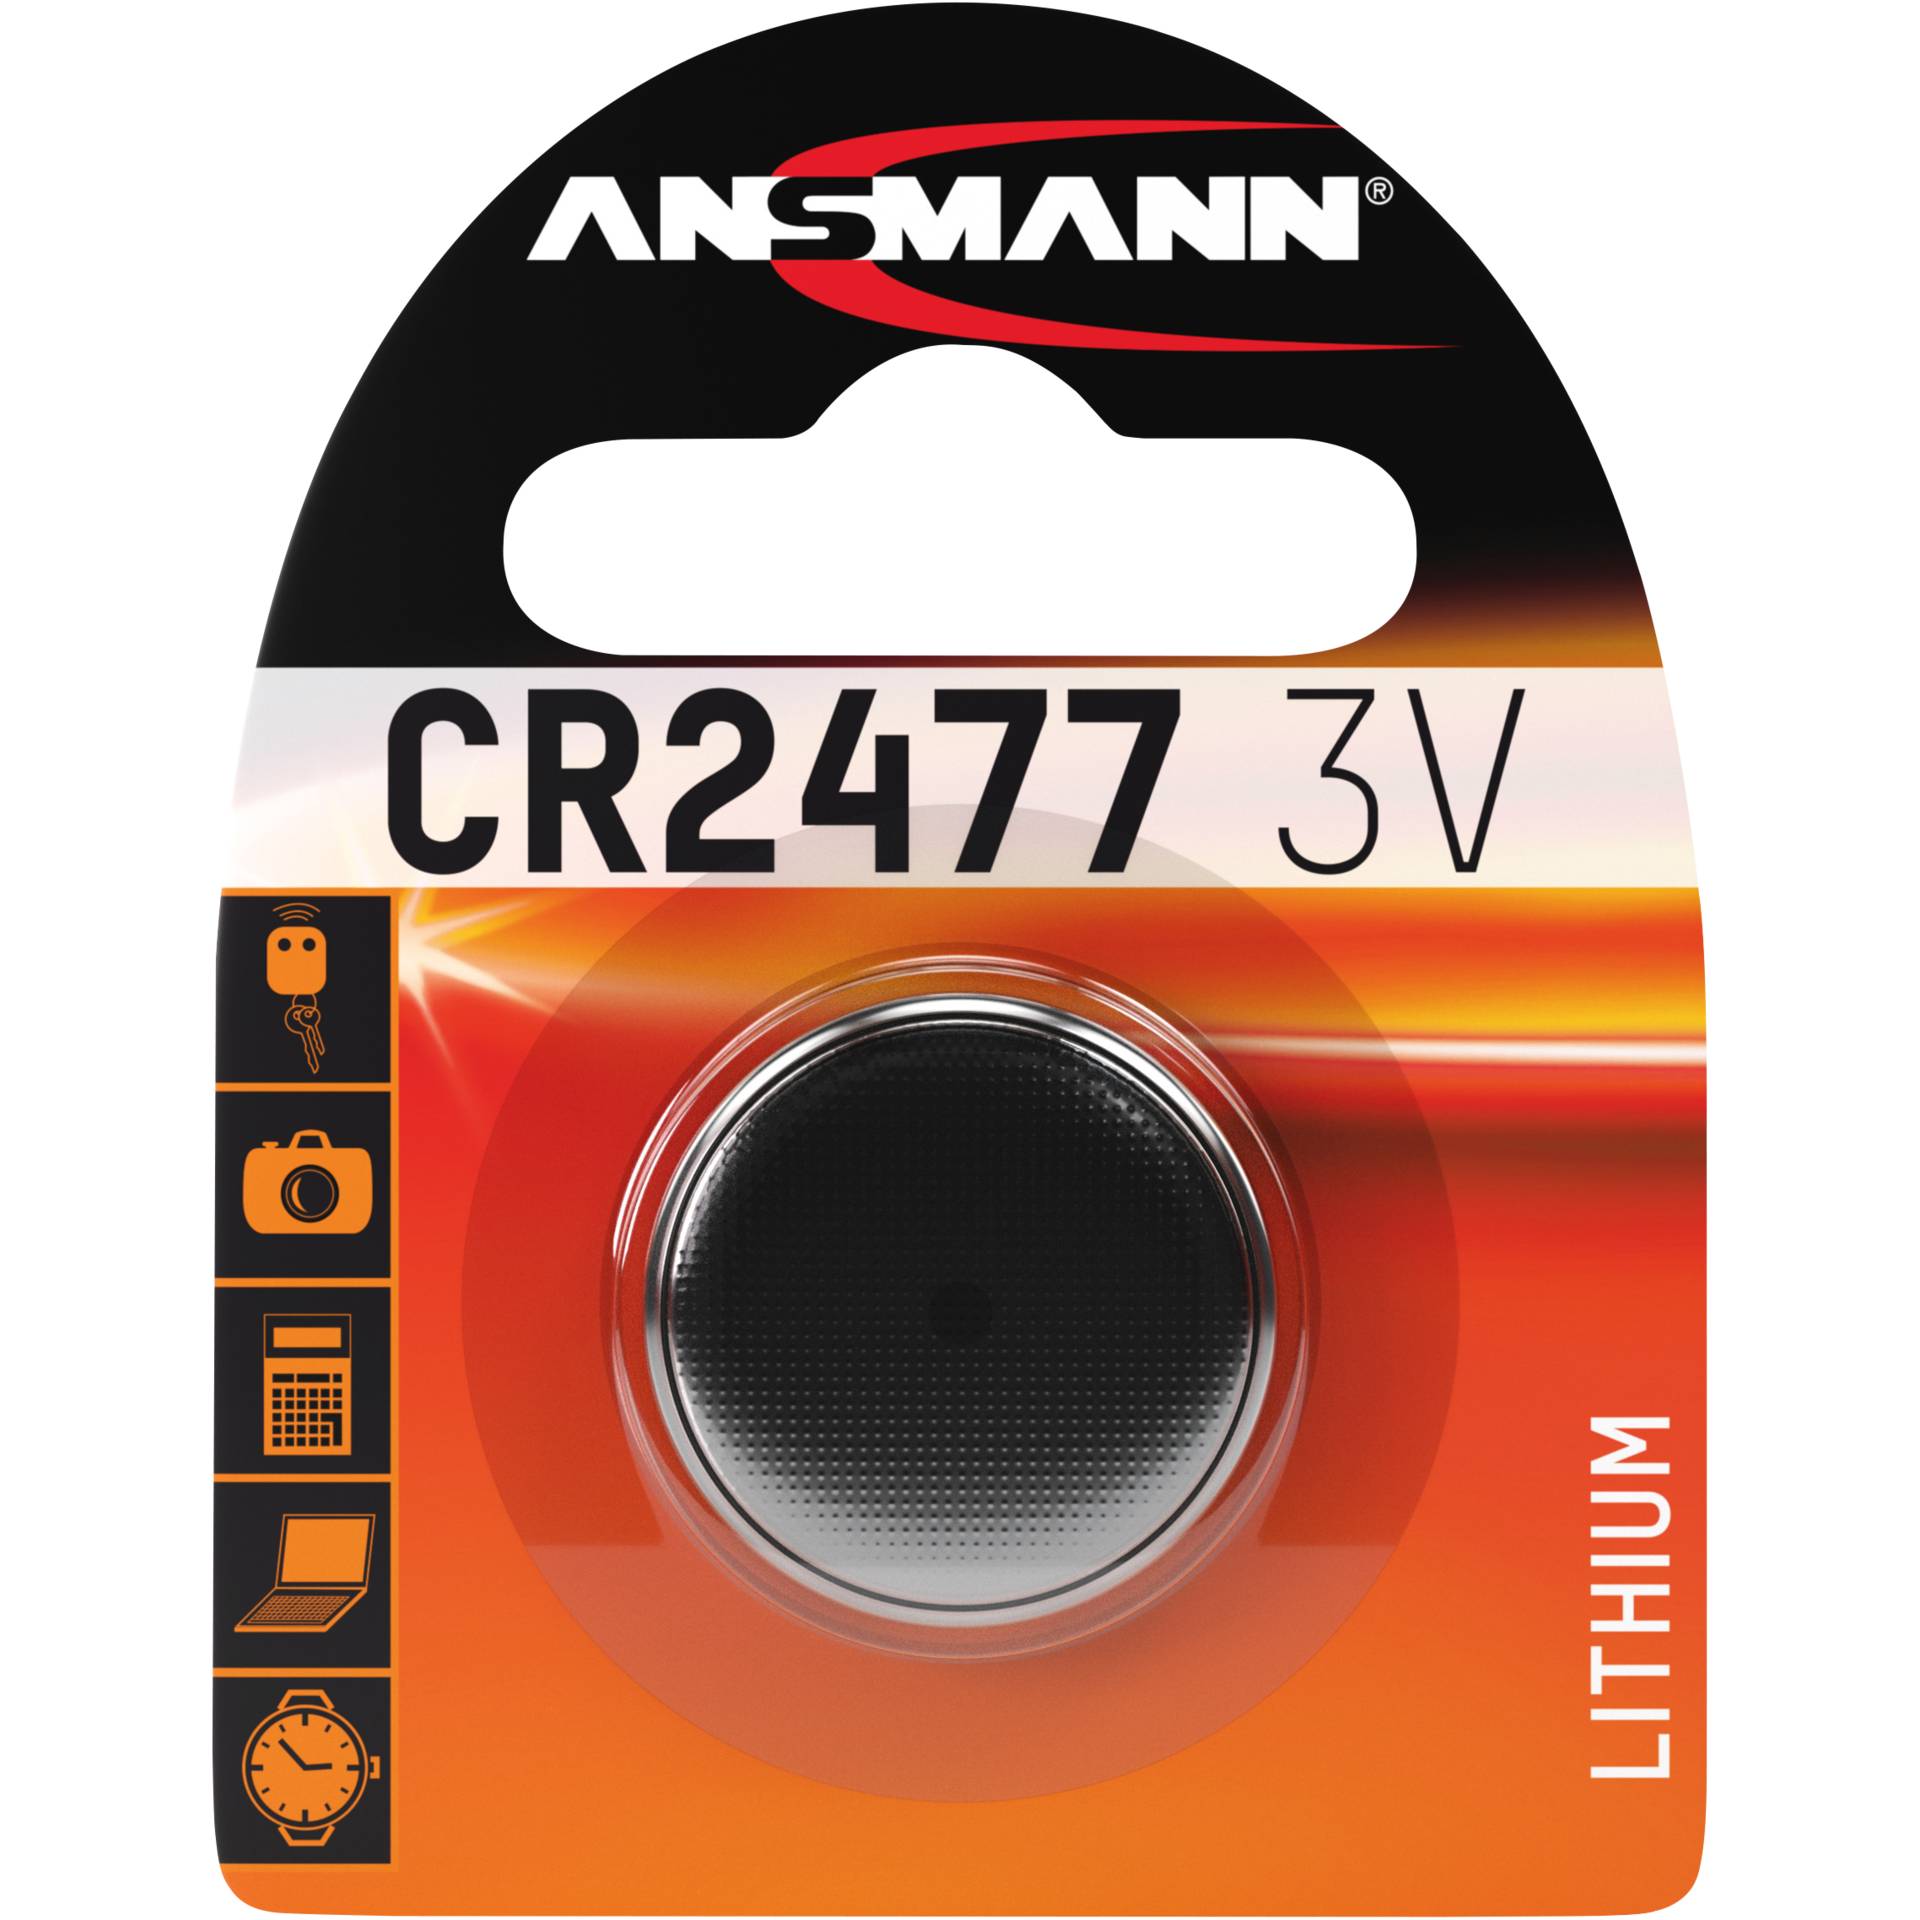 Ansmann CR 2477